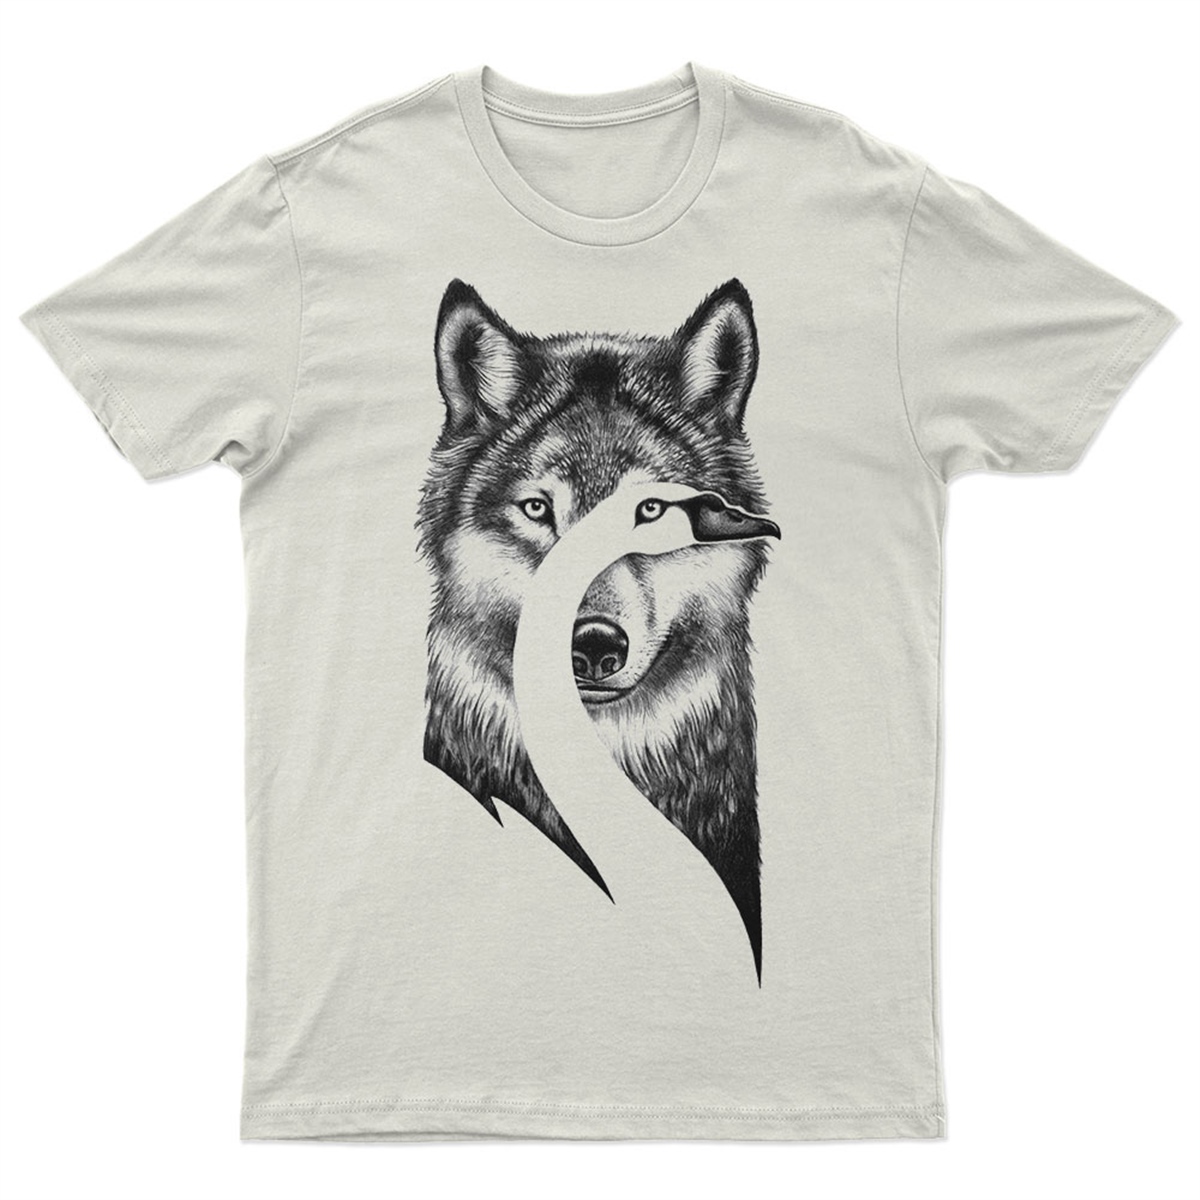 Kurt Baskılı Tasarım Unisex Tişört - Kurt T-Shirt